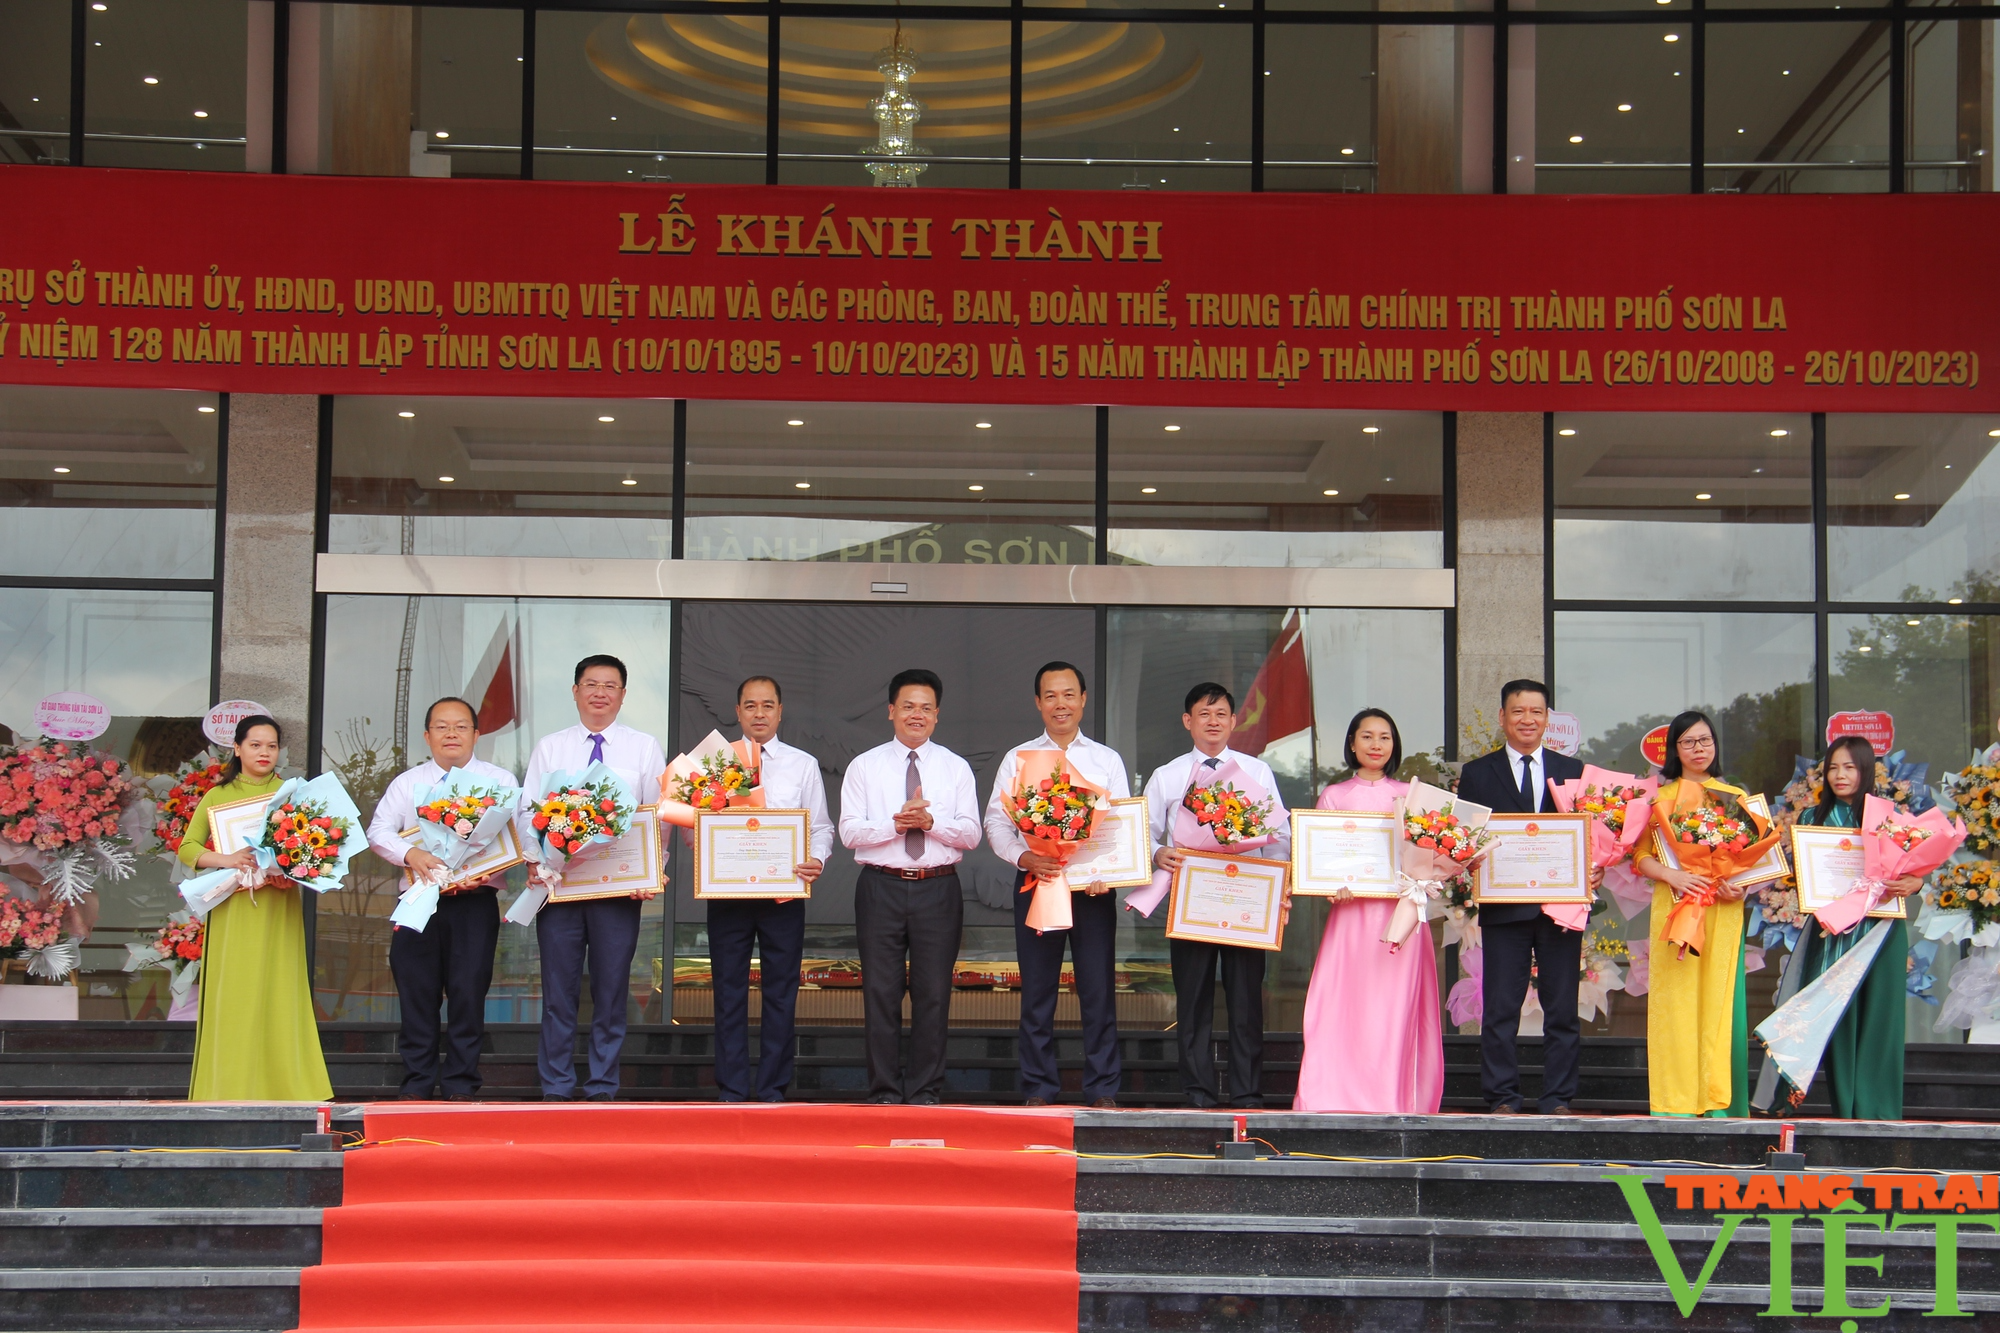 Trụ sở làm việc mới của Thành ủy, HĐND, UBND, UBMTTQ thành phố Sơn La đi vào hoạt động  - Ảnh 8.